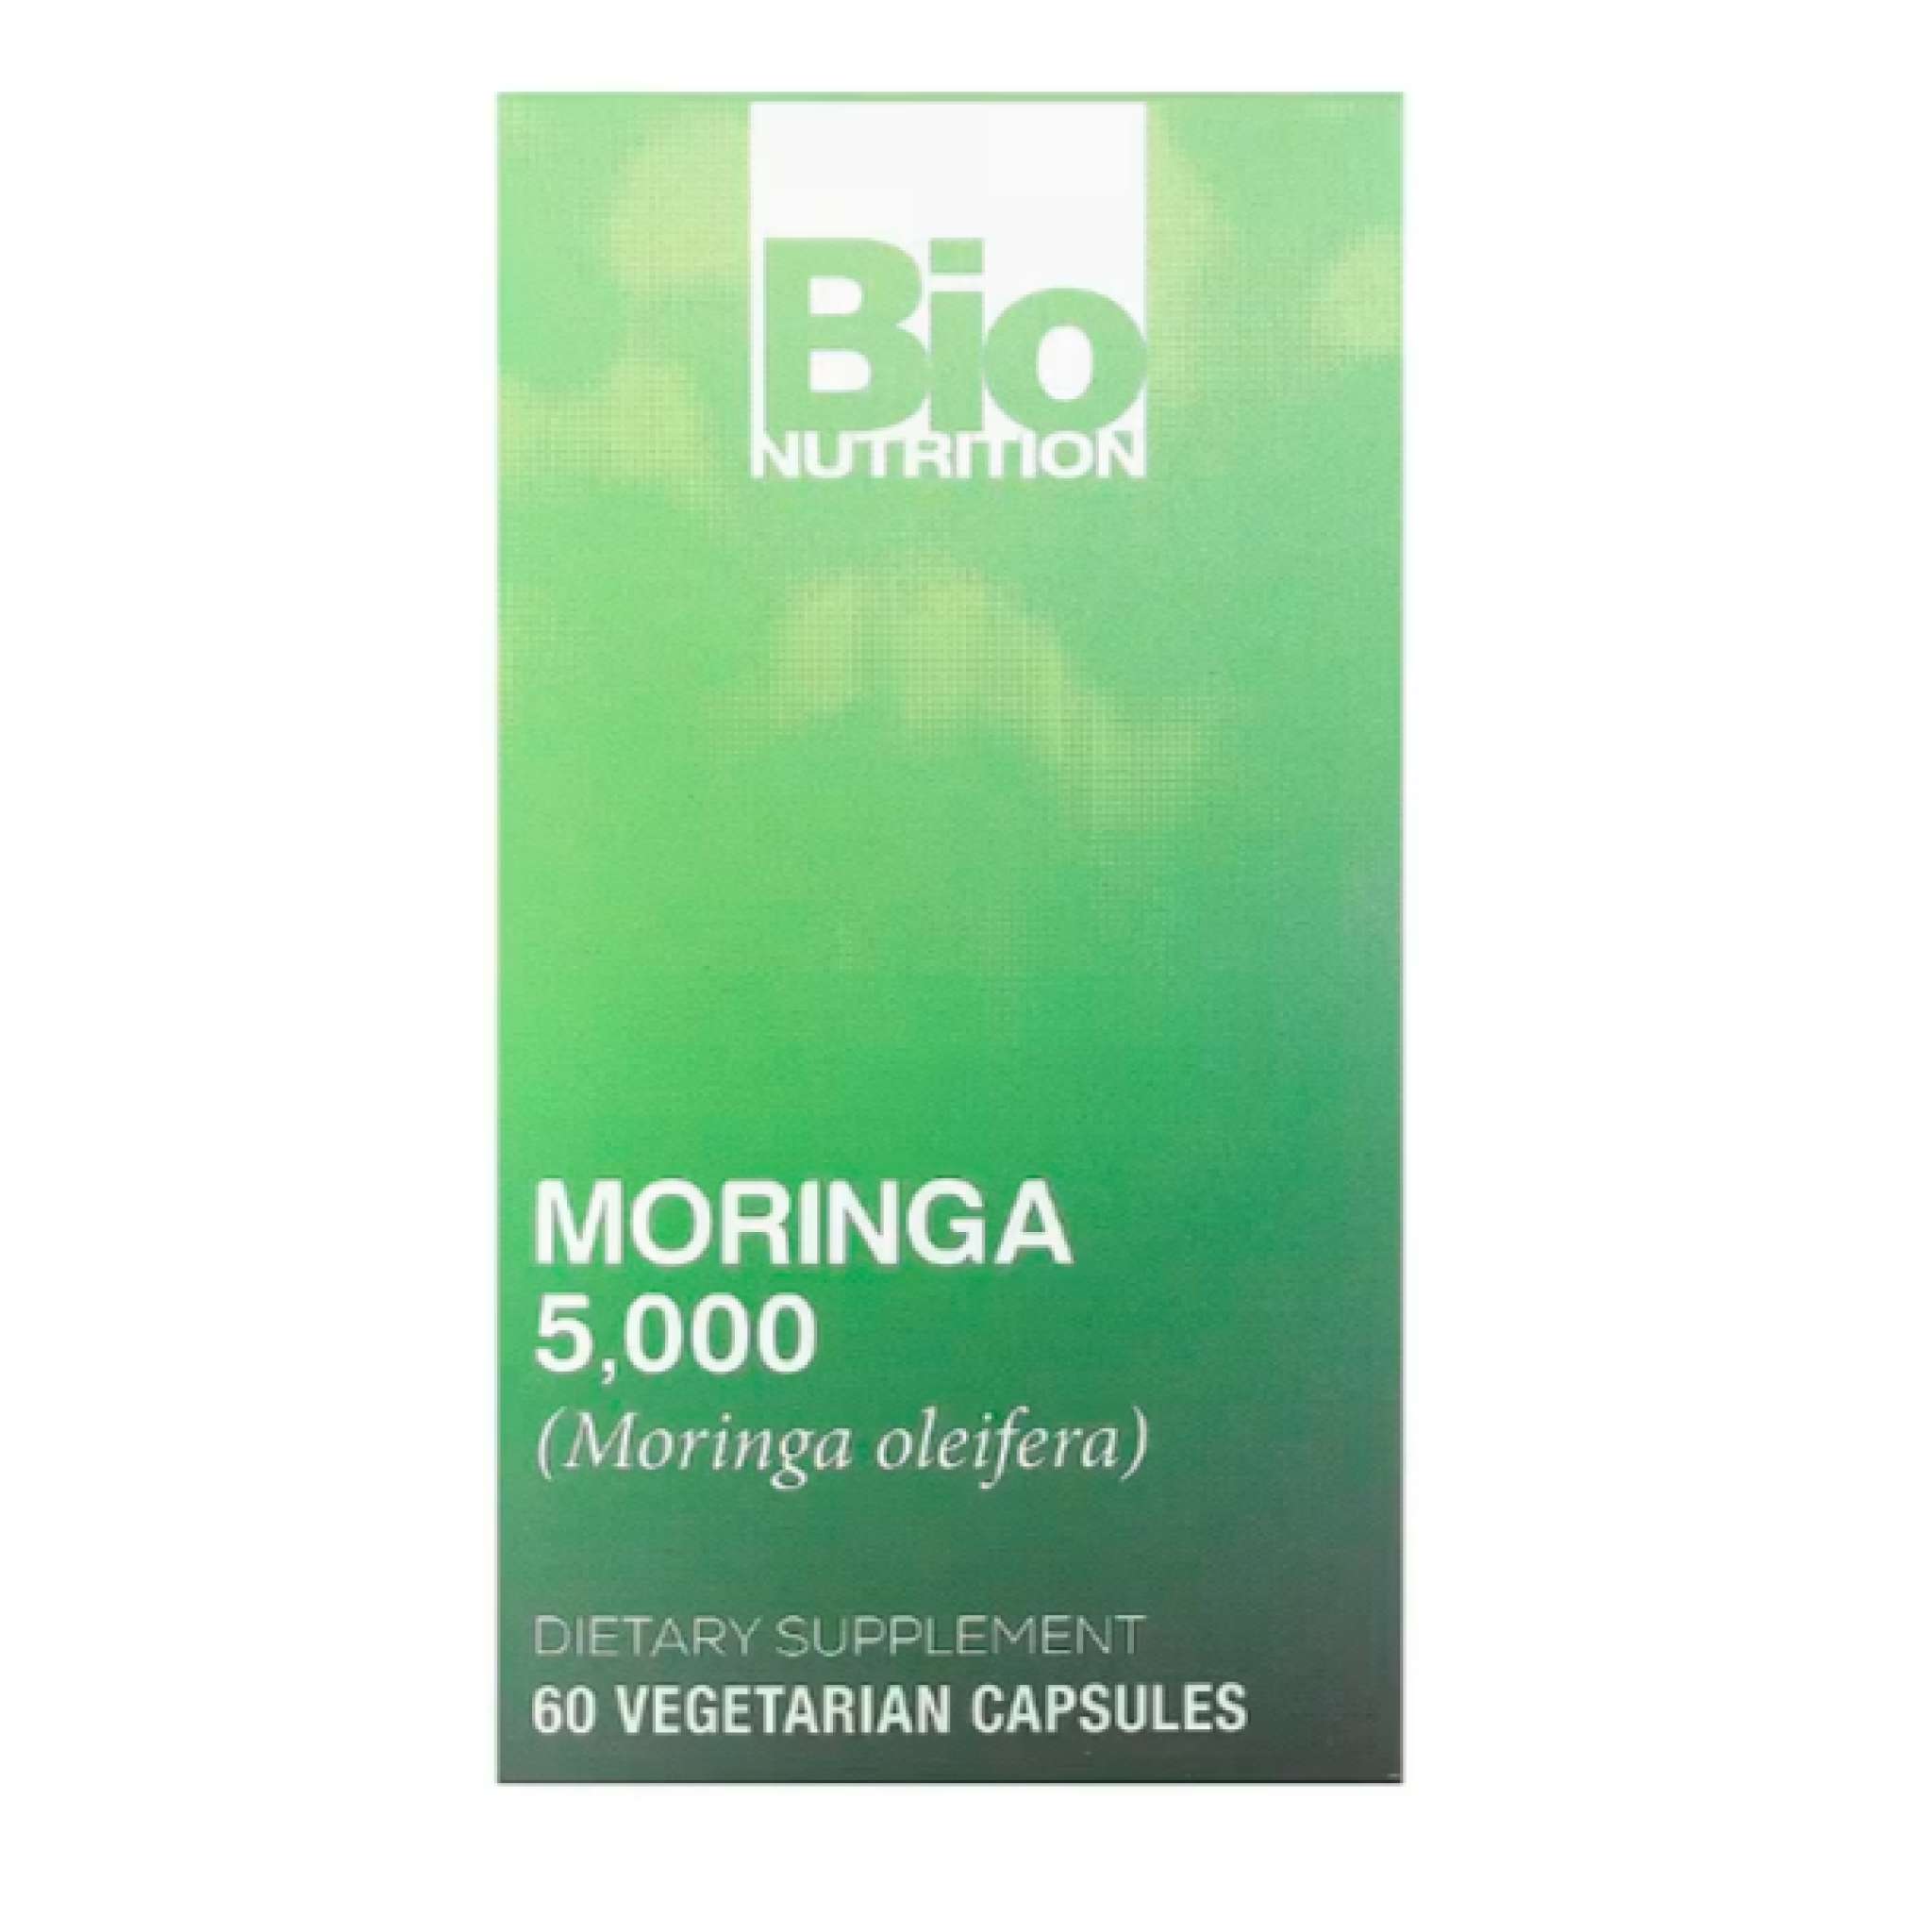 Bio Nutrition - Moringa 5000 mg Super Food